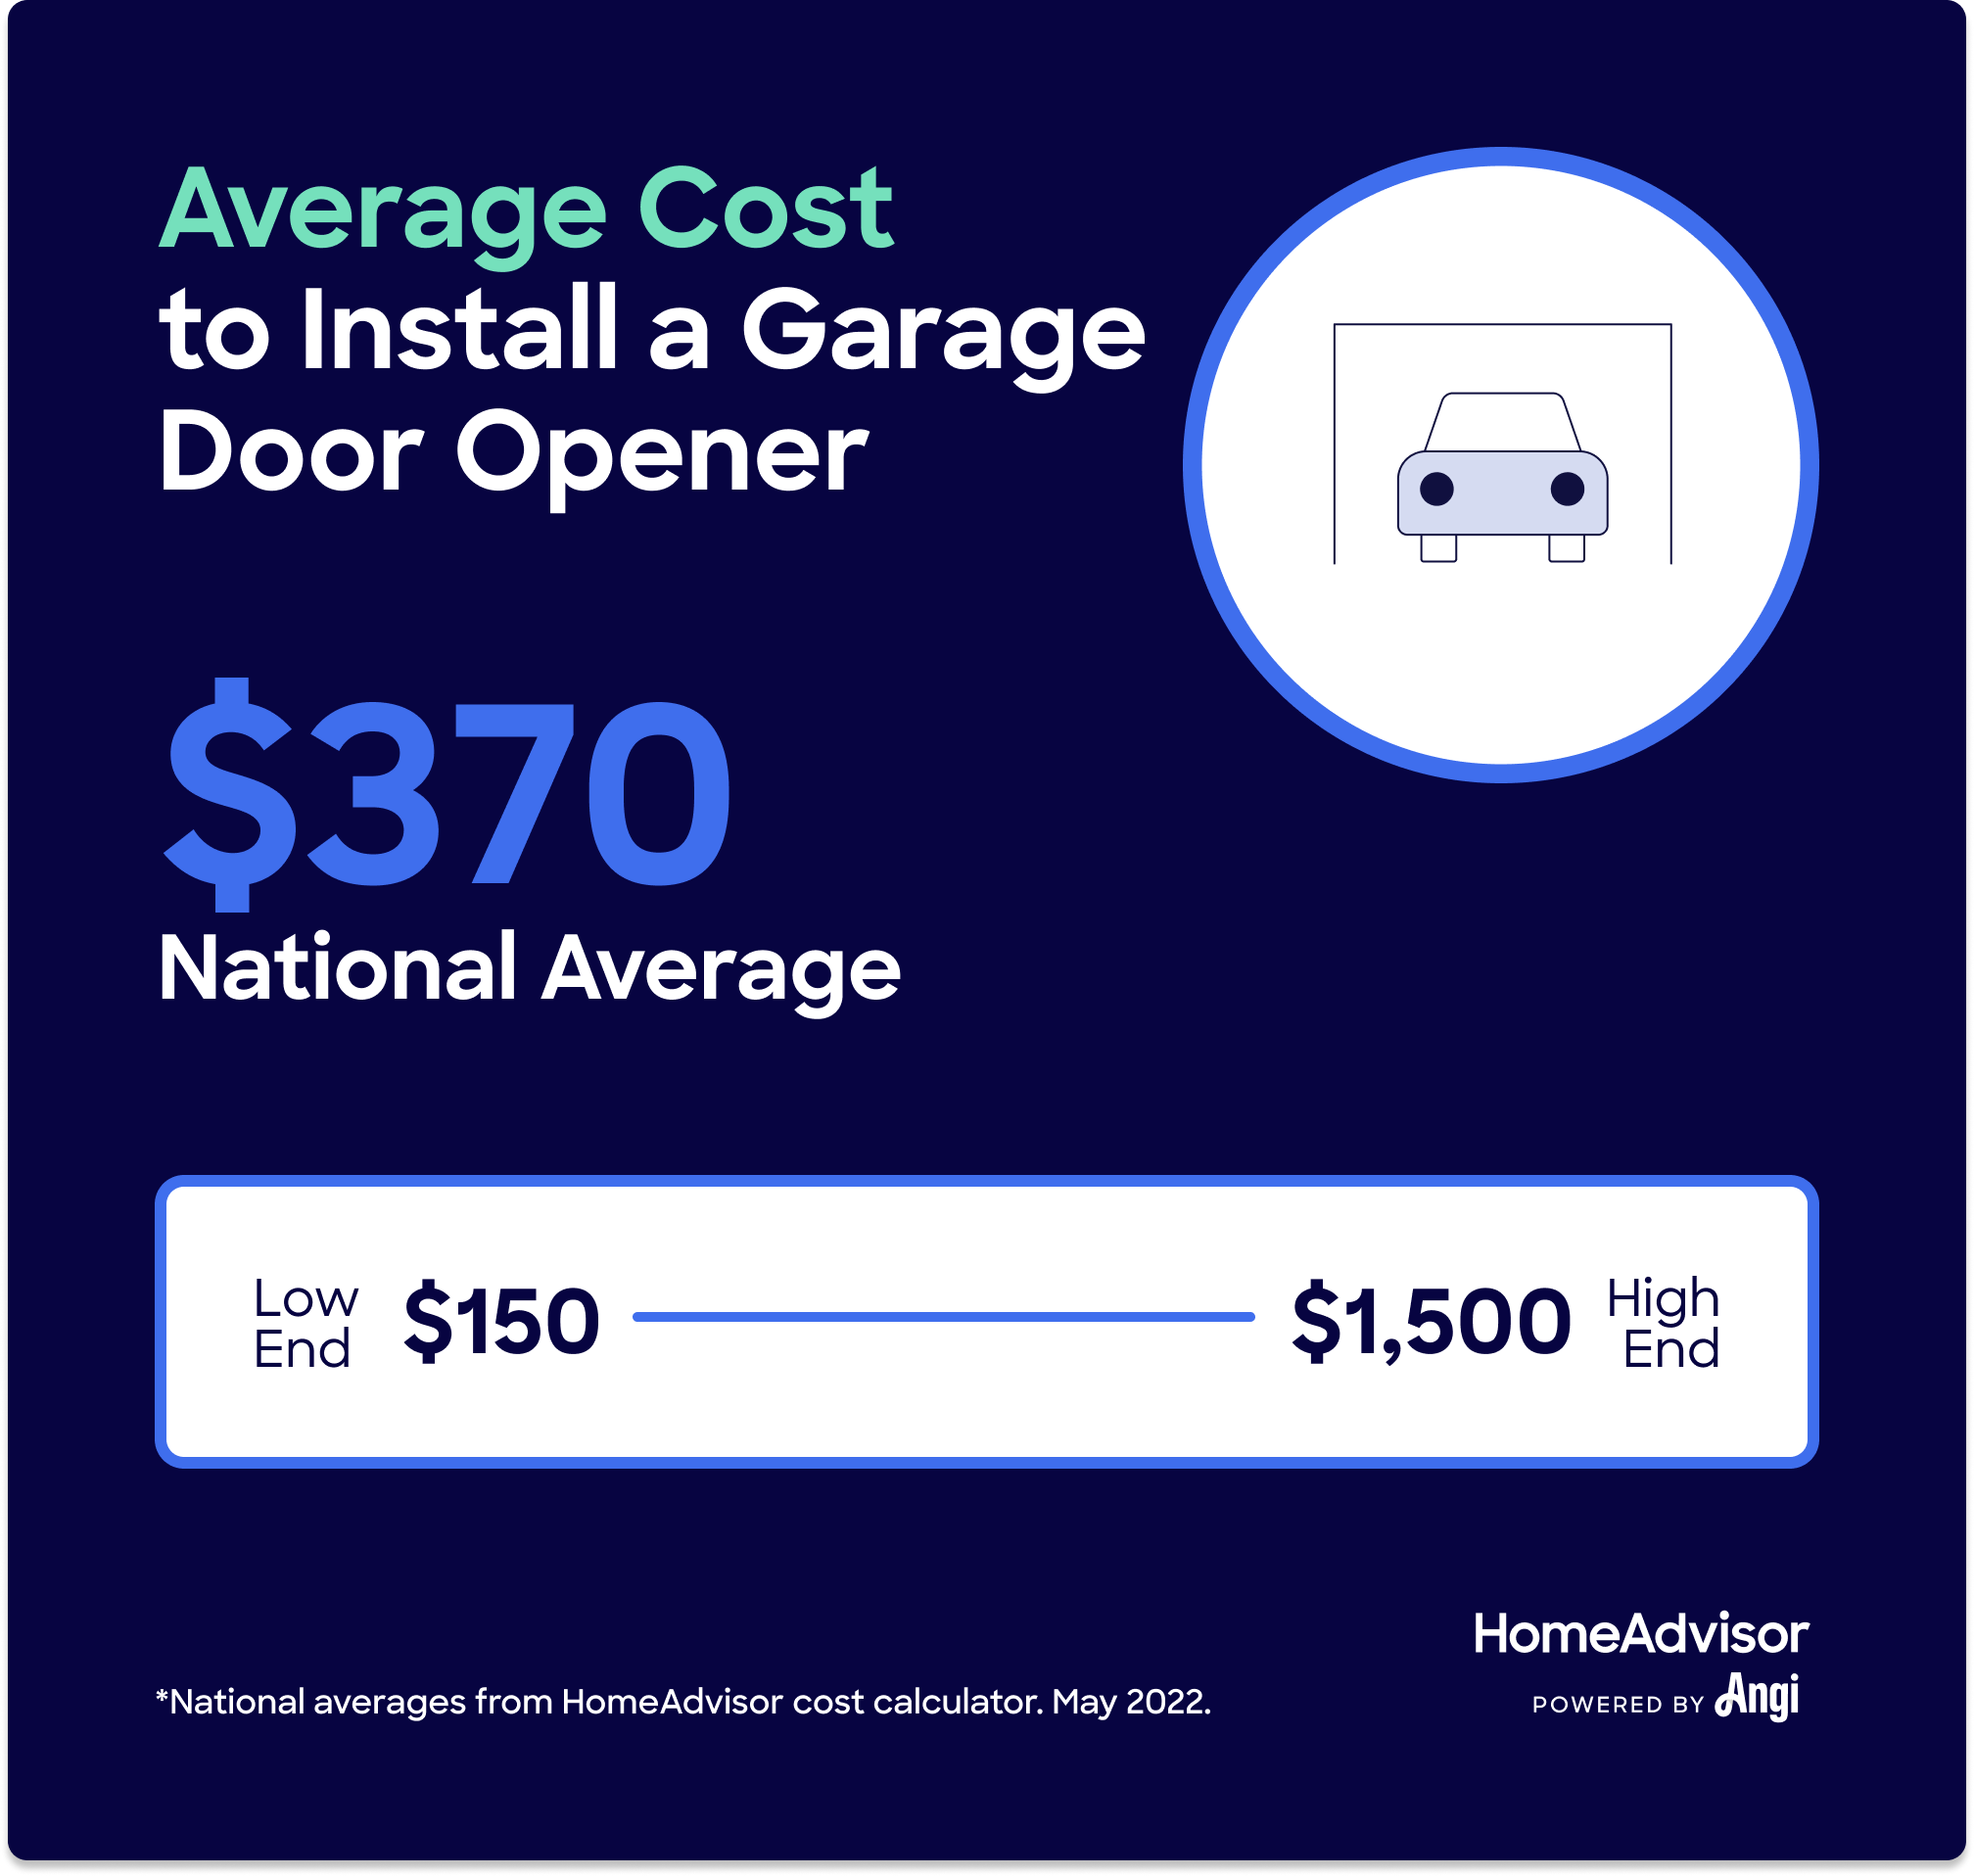 ¿Cuánto debería costar un nuevo abridor de puerta de garaje?